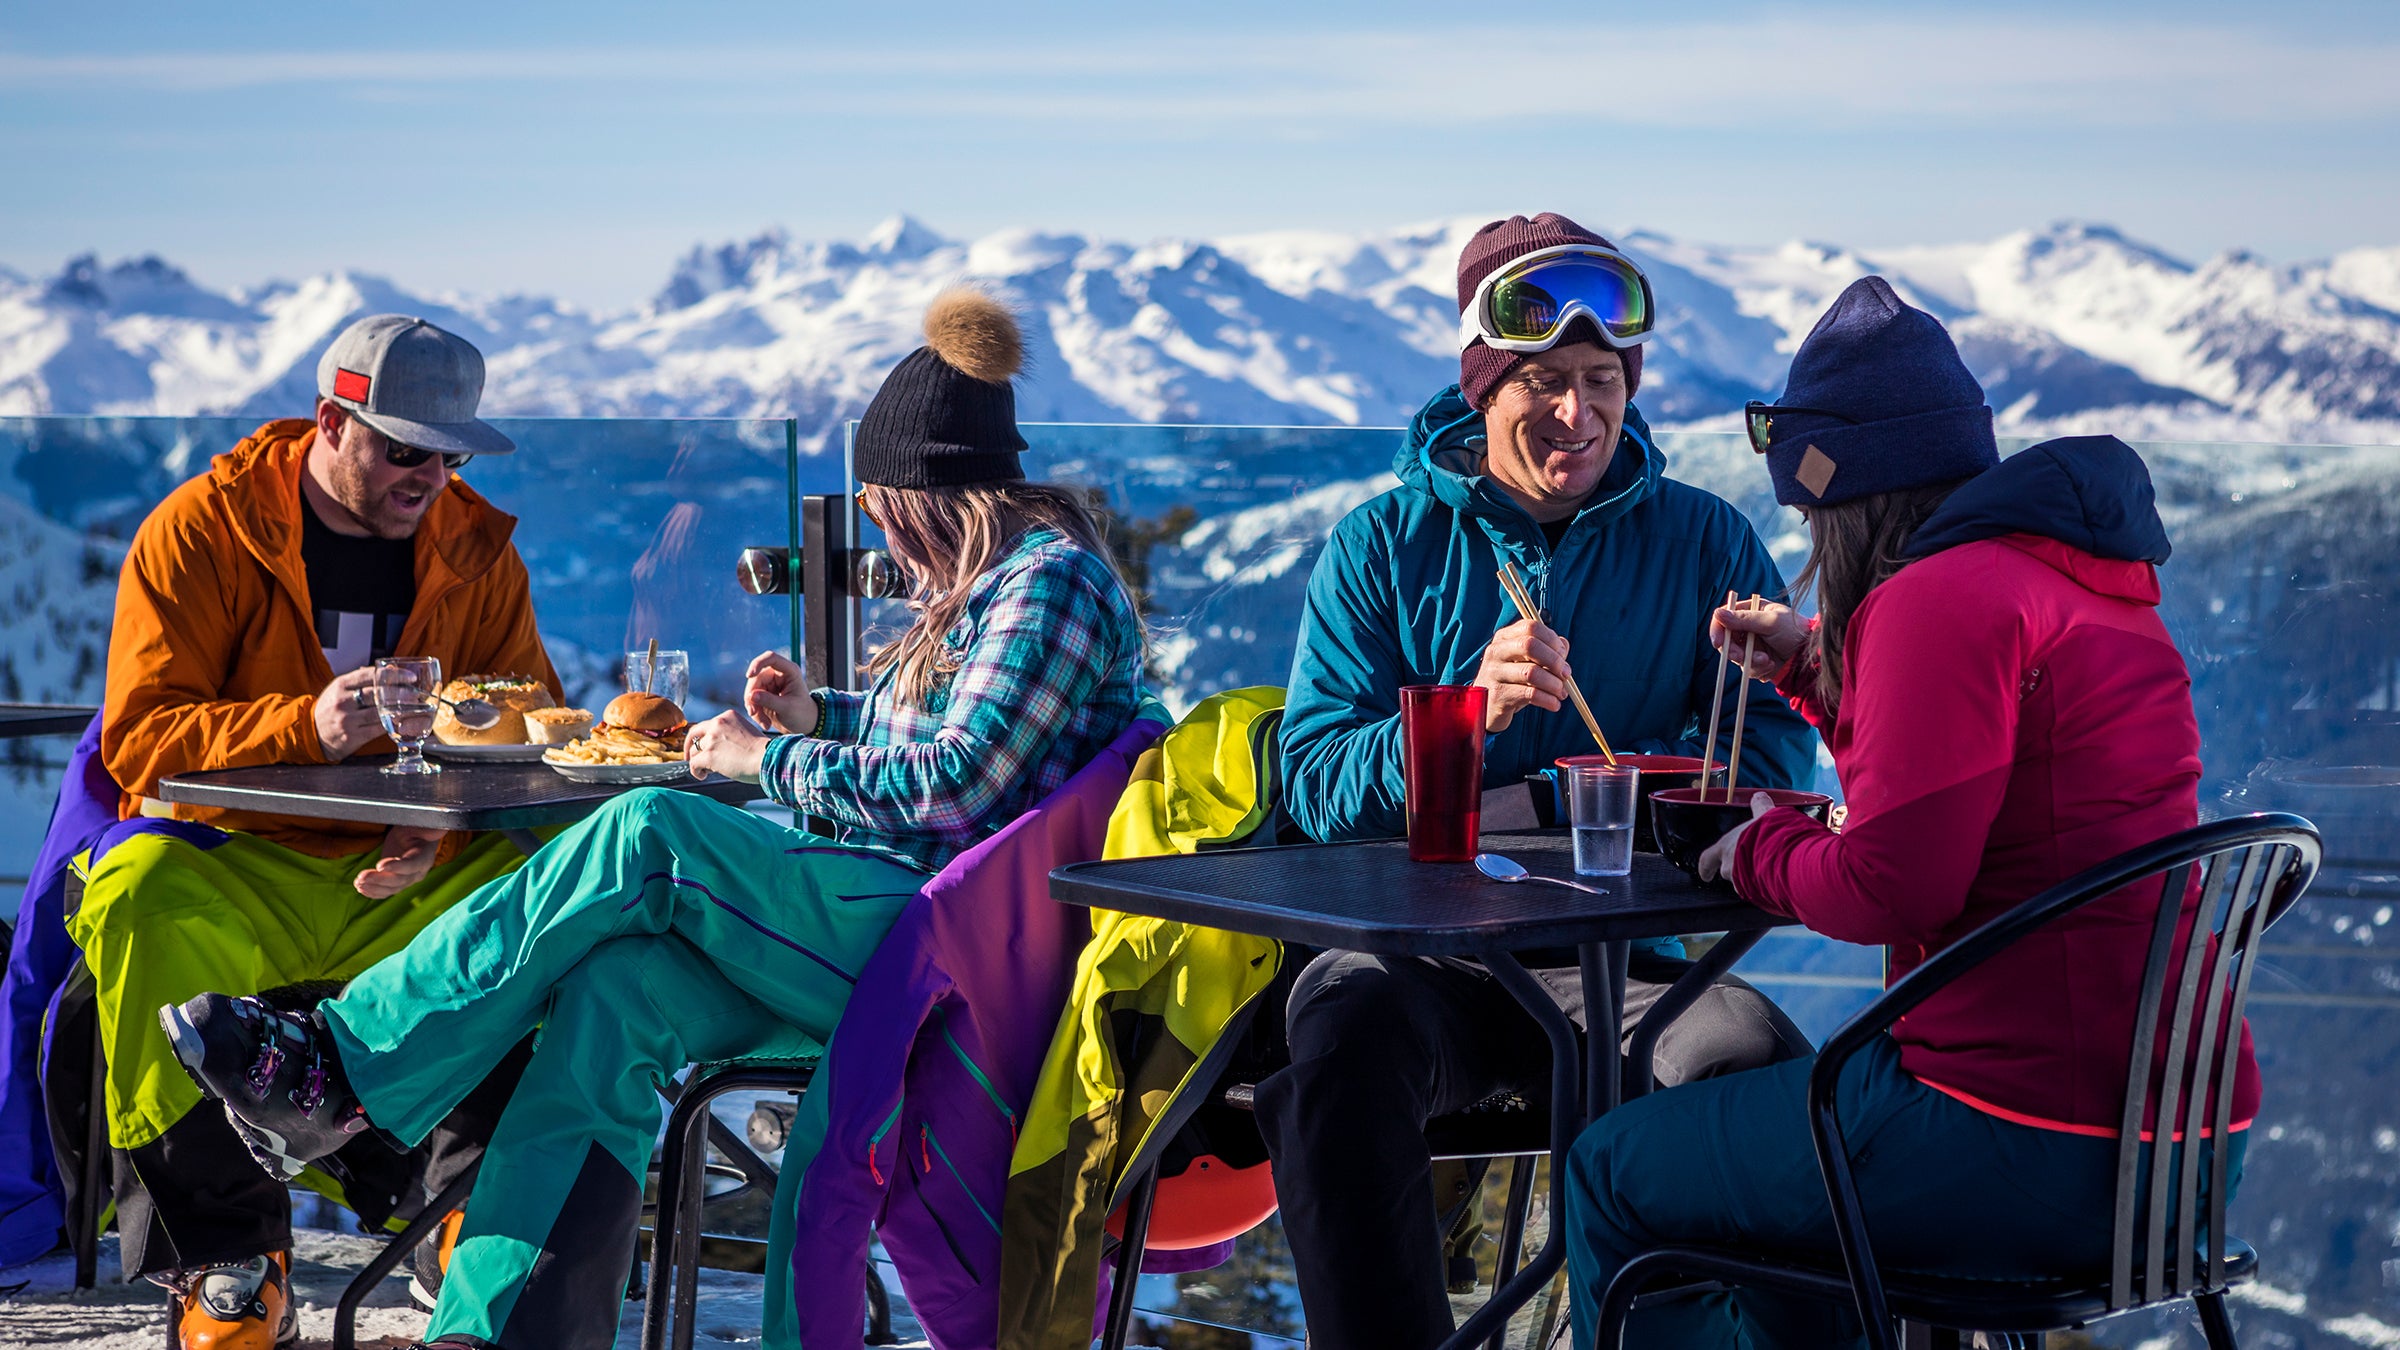 What's the Best Après Ski Party Gear?